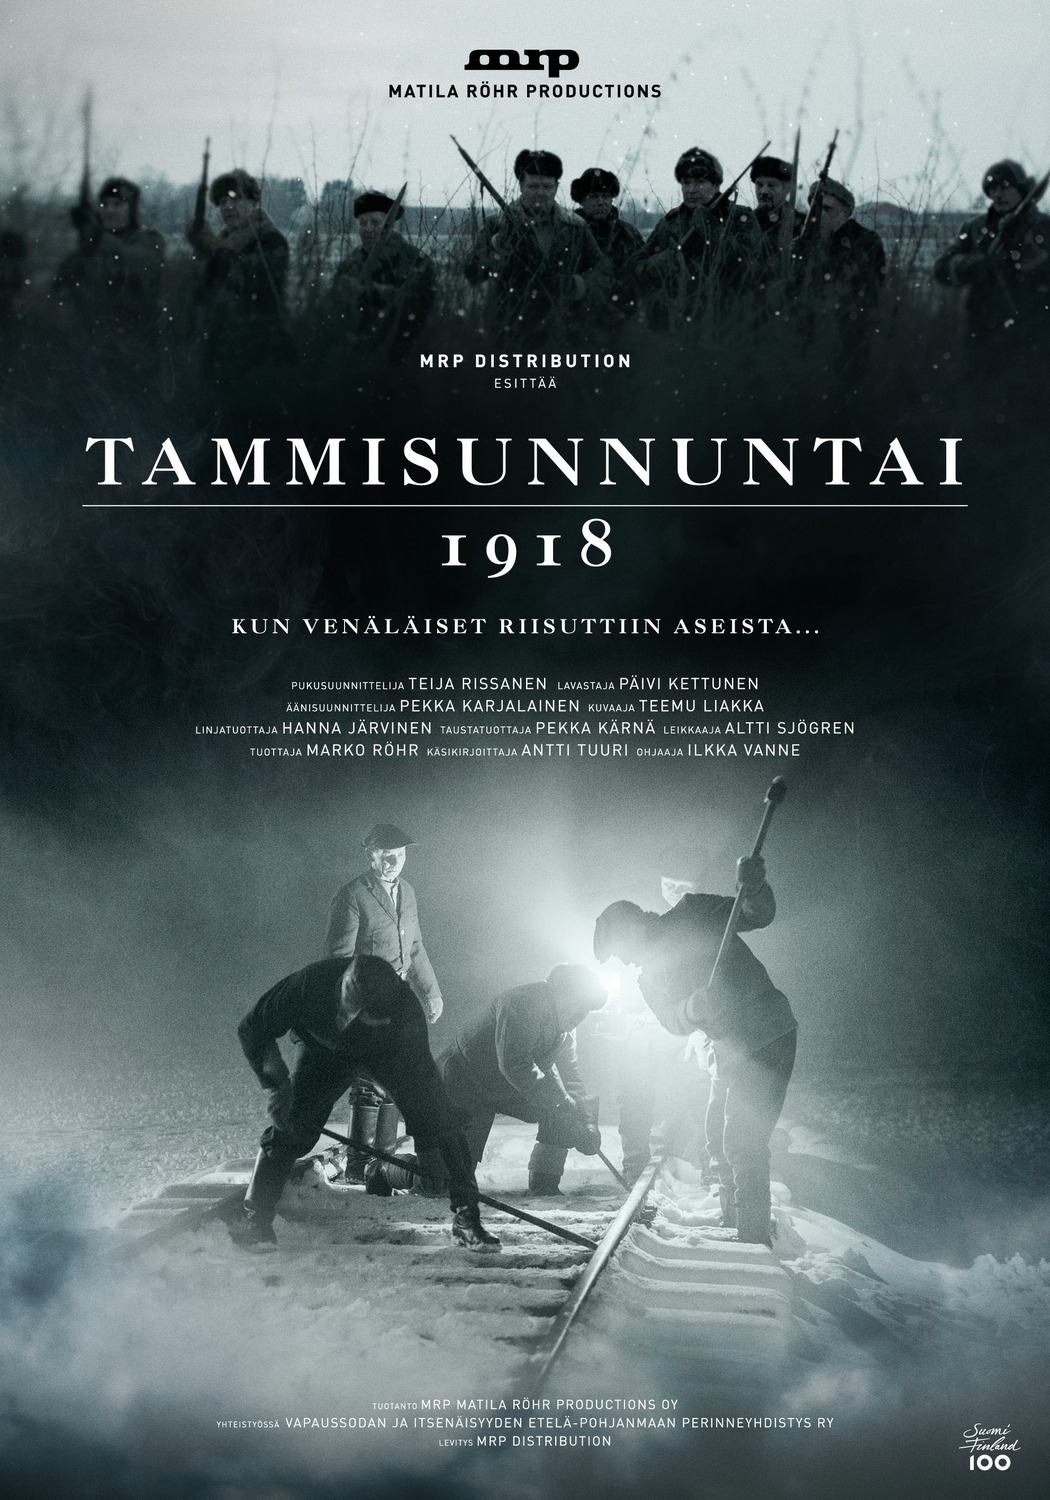 Extra Large Movie Poster Image for Tammisunnuntai 1918 